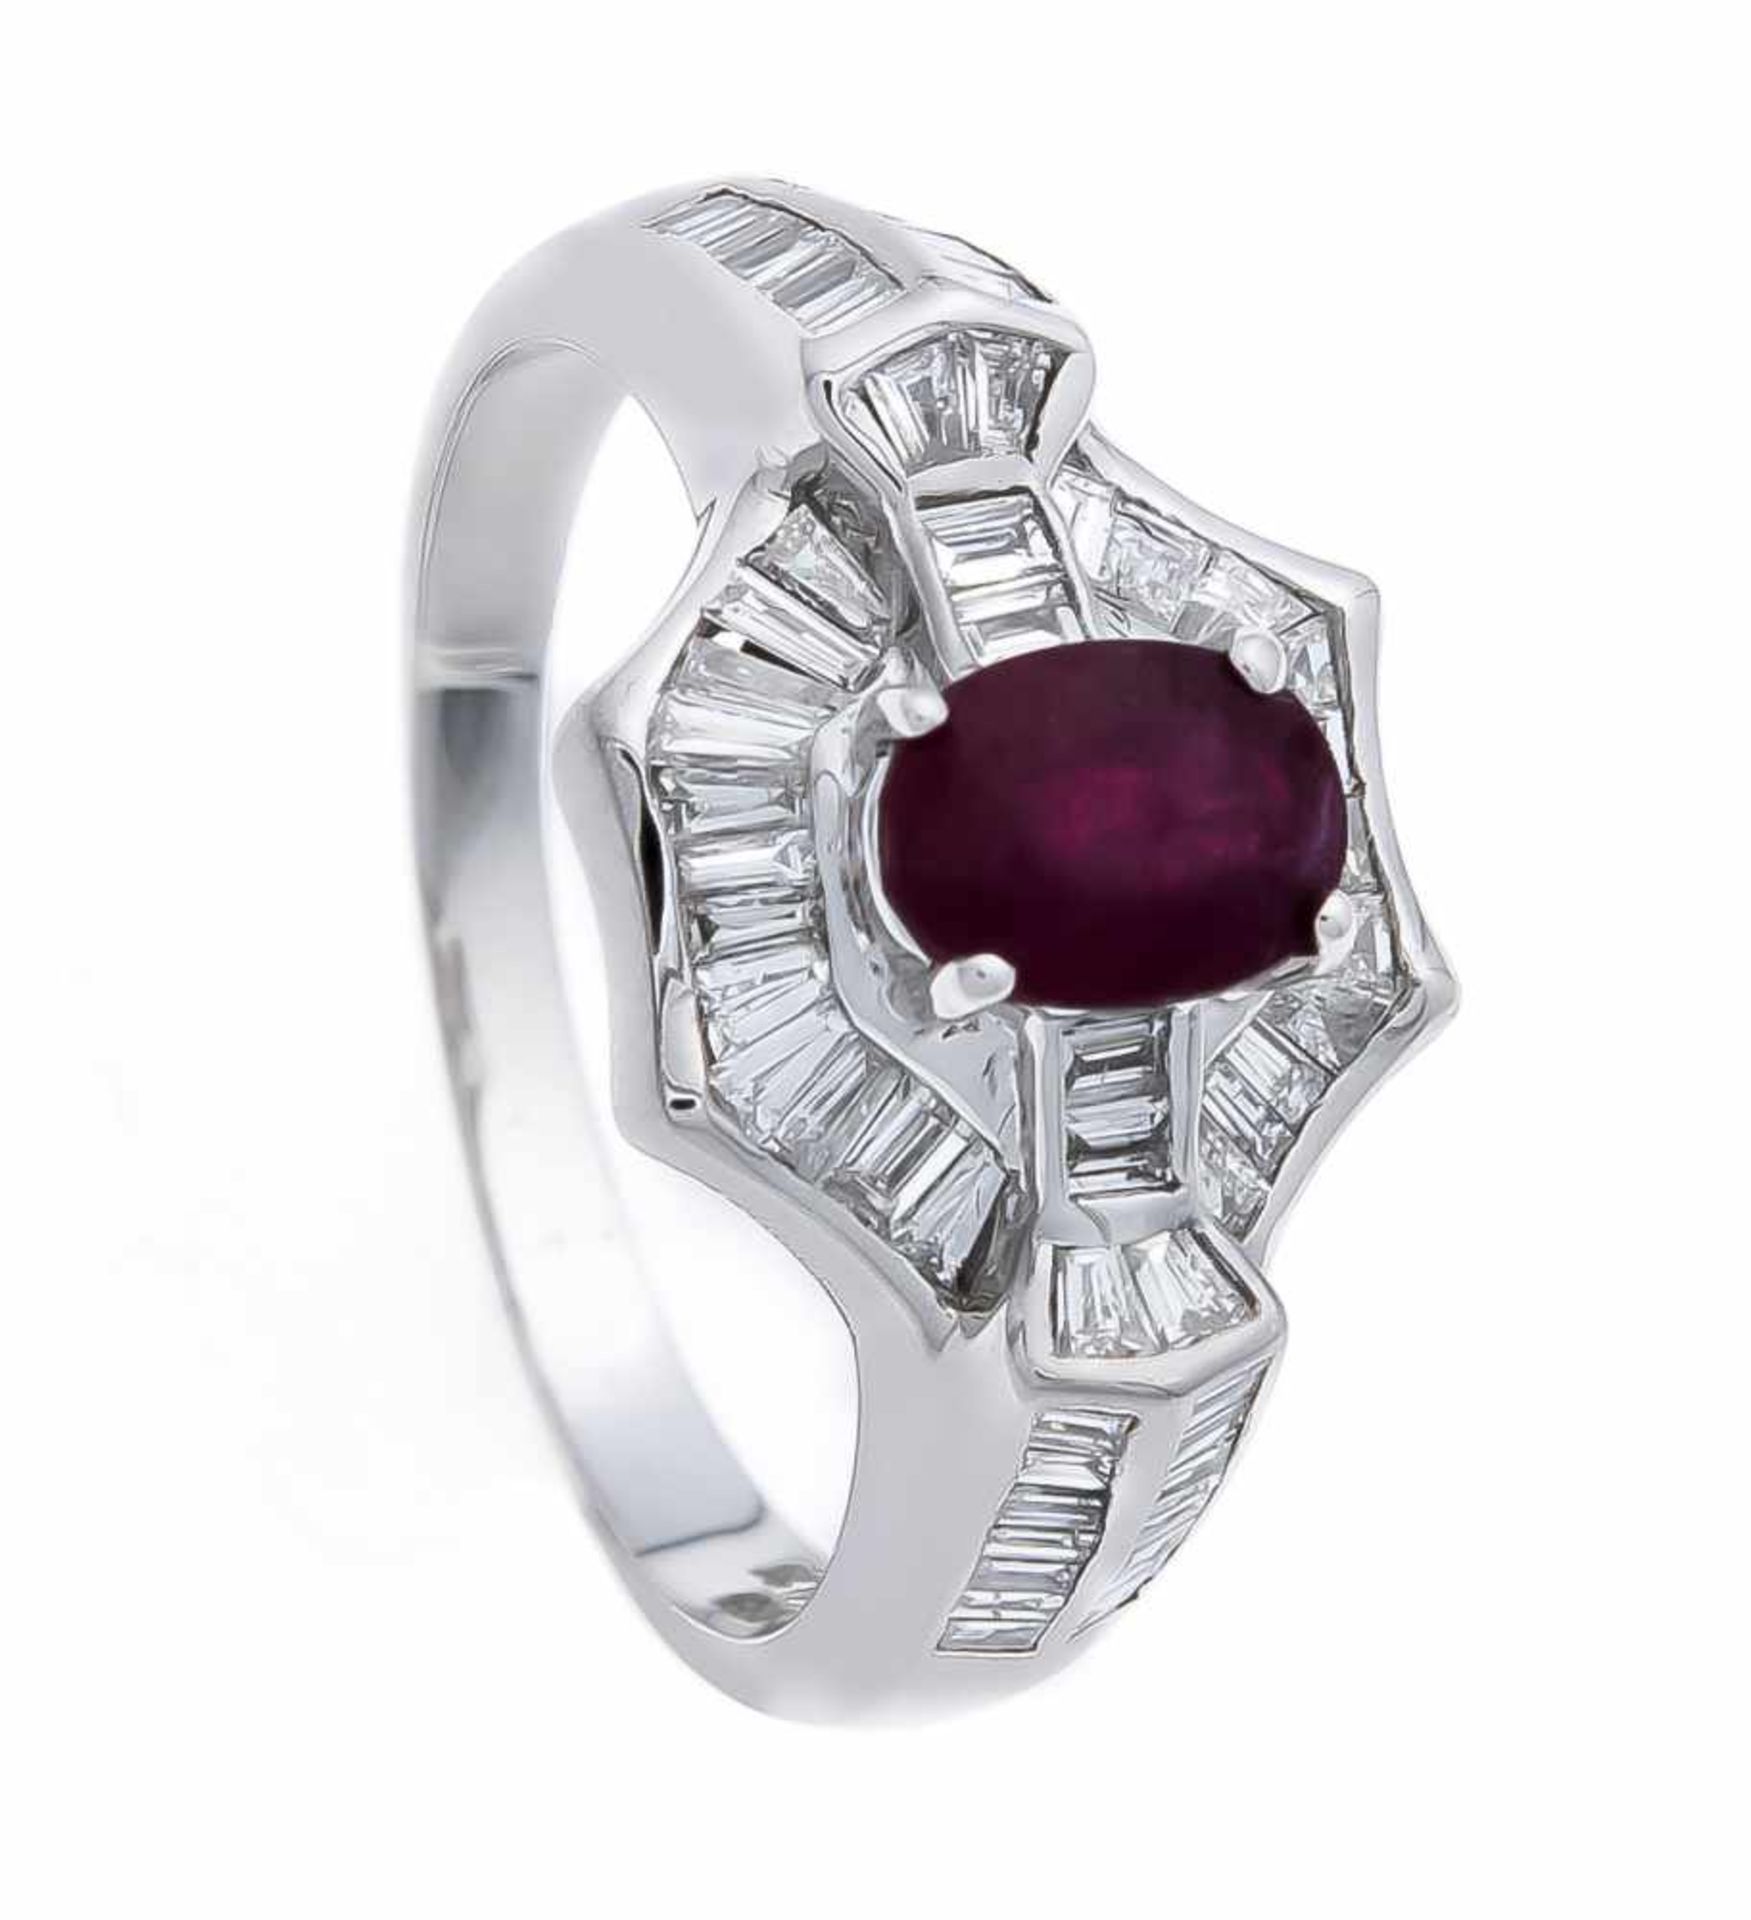 Rubin-Brillant-Ring WG 750/000 mit einem oval fac. Rubin 1,26 ct in guter Farbe und 59 Diamant-